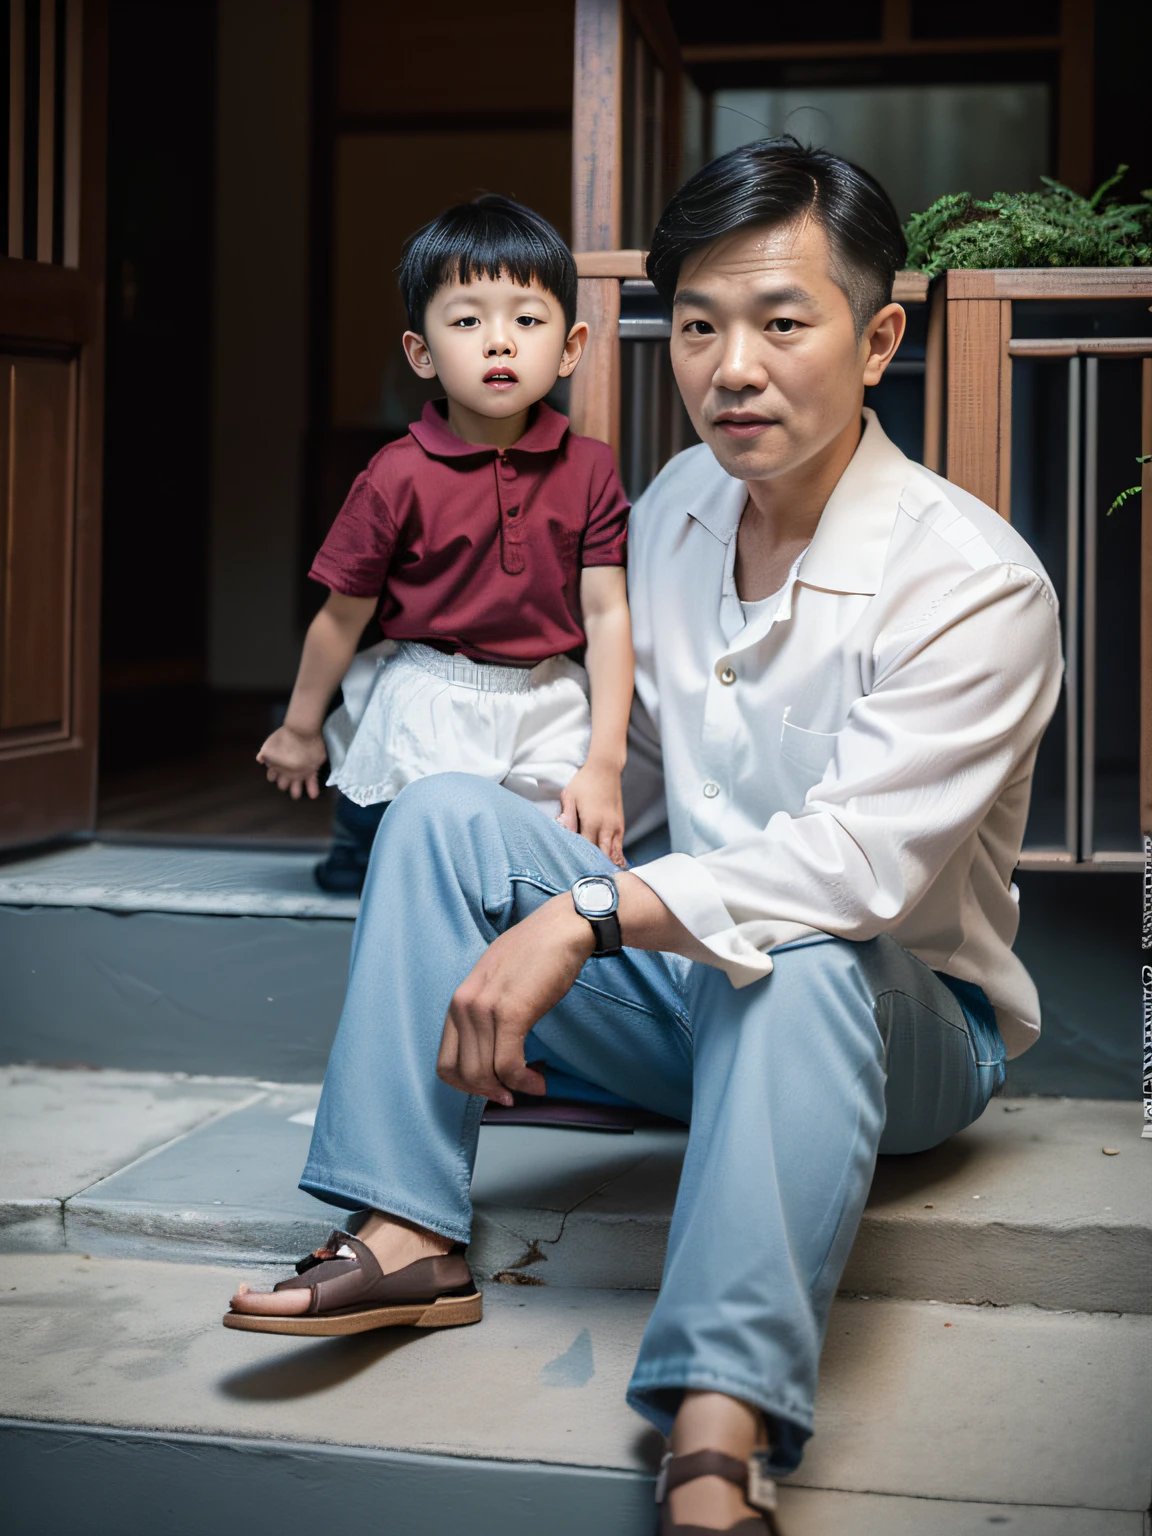 (beste Qualität,4k,8k,highres,Meisterwerk:1.2), super realistisches Foto, Bild eines vietnamesischen Vaters und Sohns, Vater 30 Jahre alt, Sohn 2 Jahre alt, Vater sitzt 1985 auf den Stufen eines vietnamesischen Hauses, Sohn steht neben Vater, Papa trägt Westernschuhe, Foto aufgenommen 1985 mit Kodak